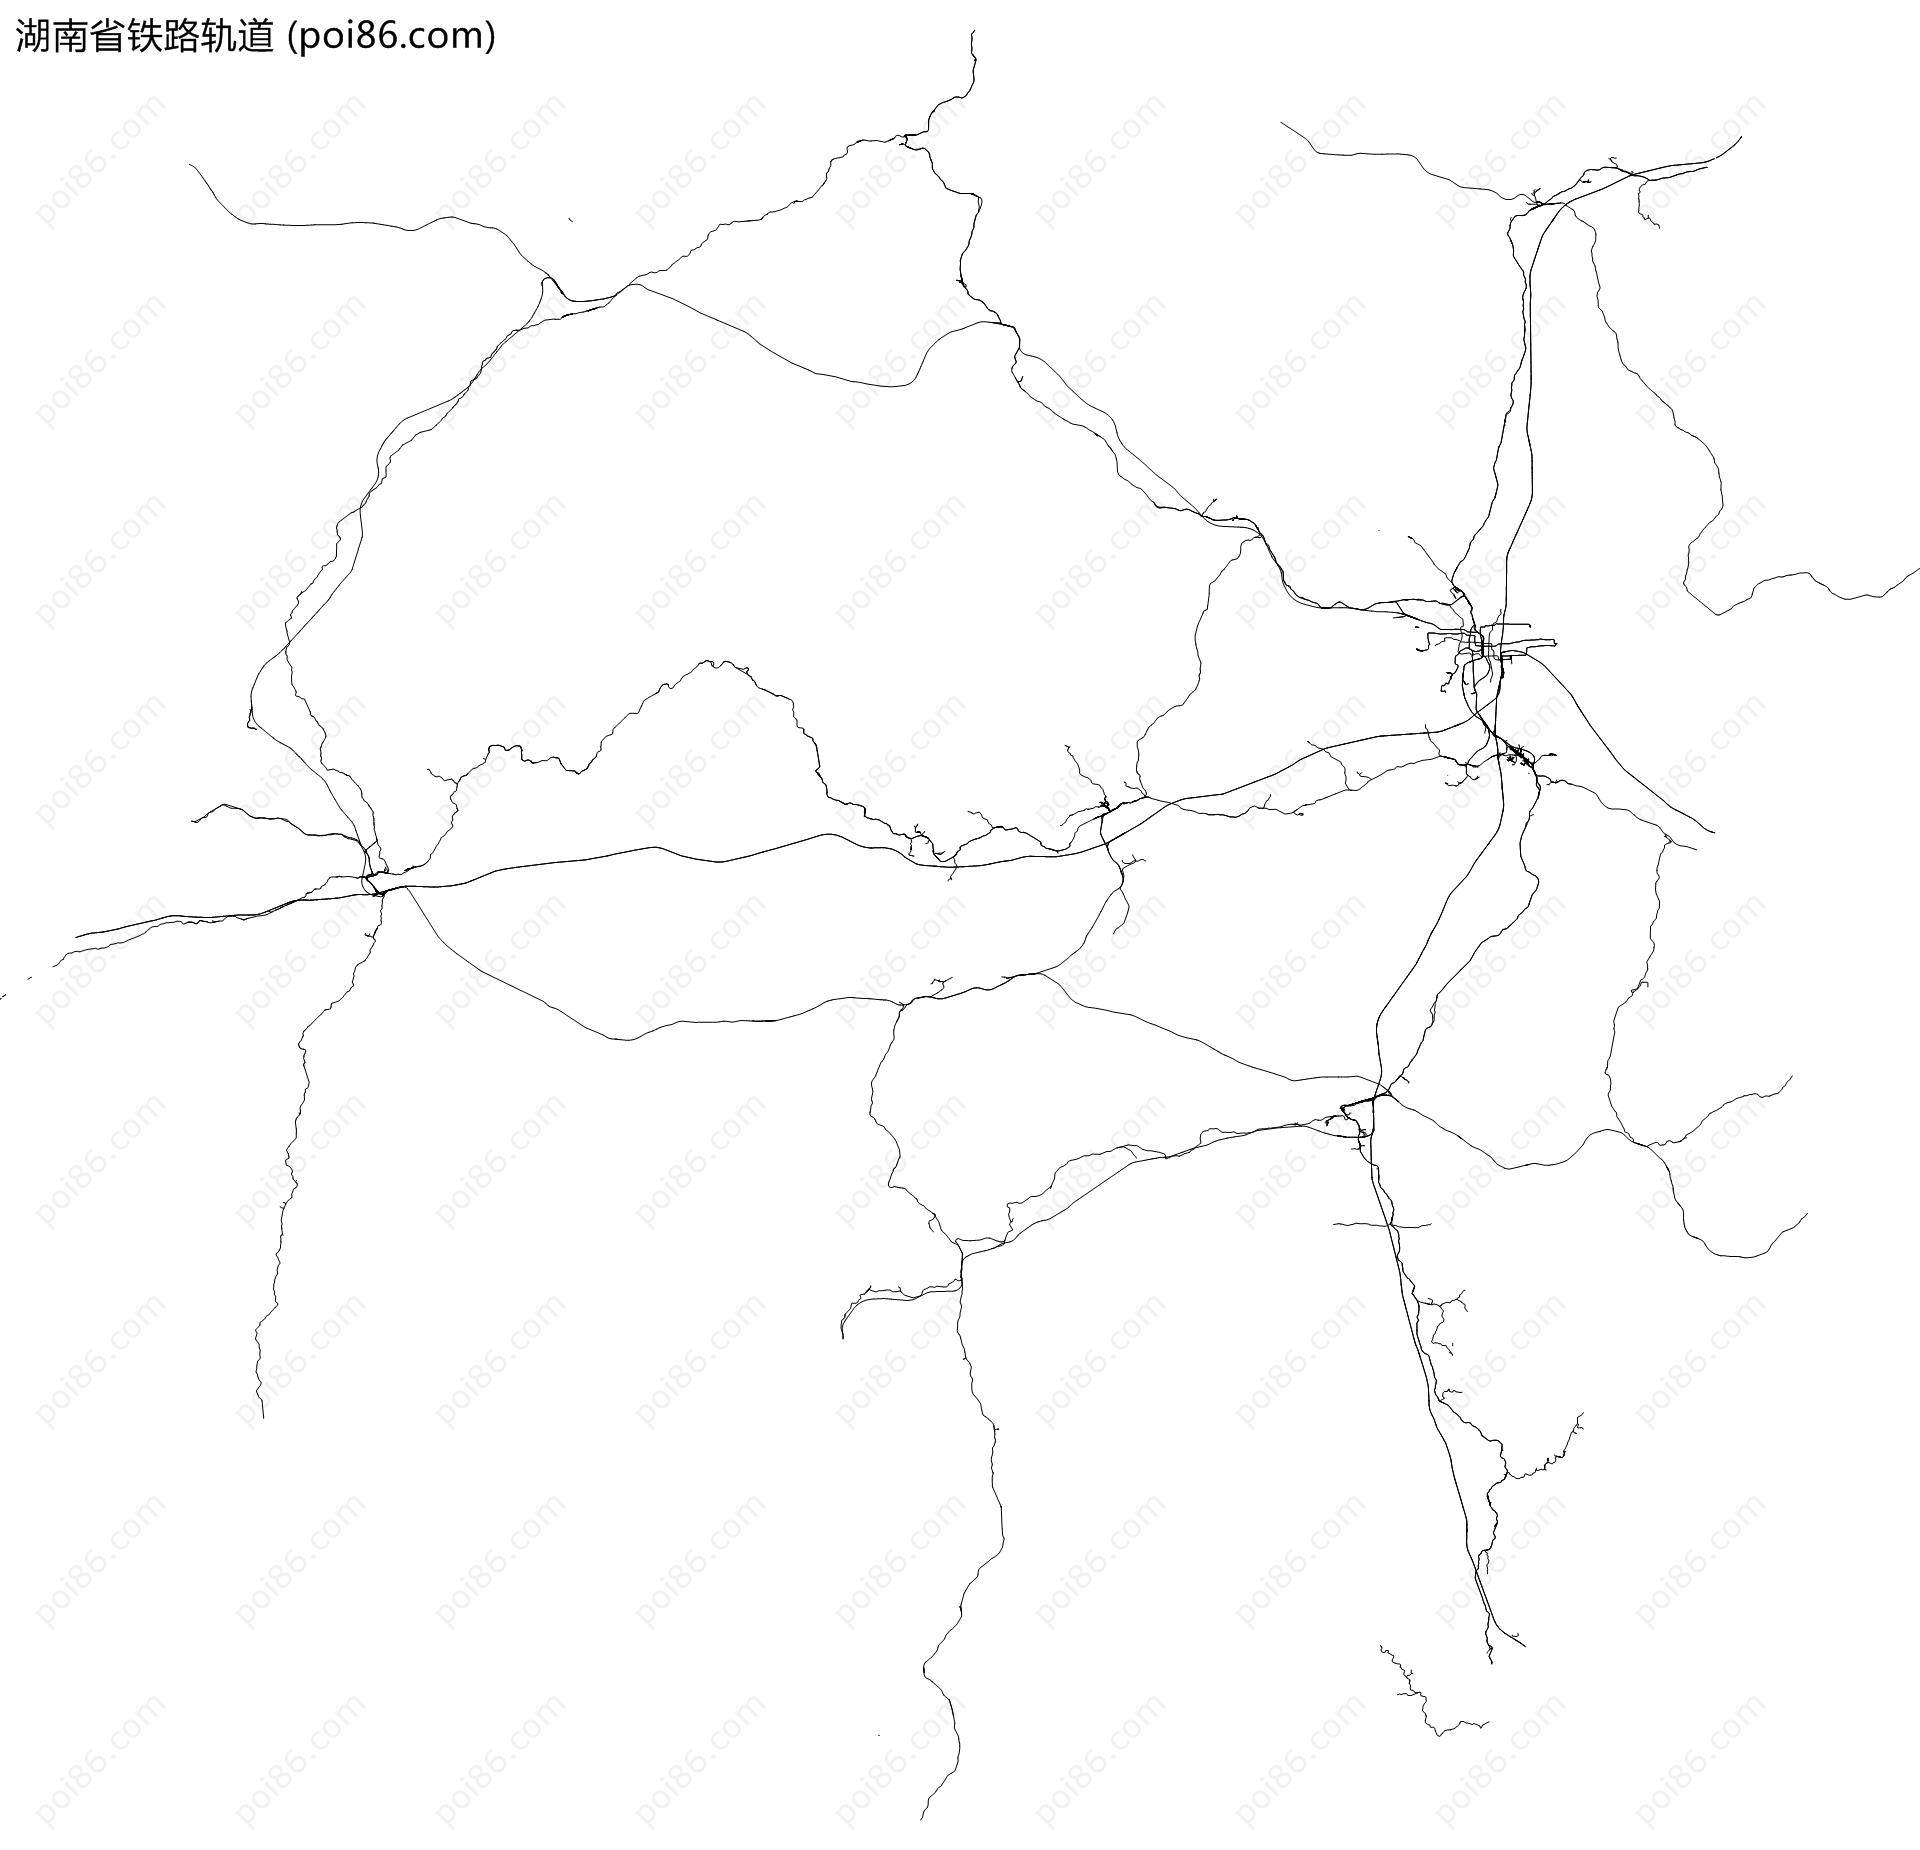 湖南省铁路轨道地图